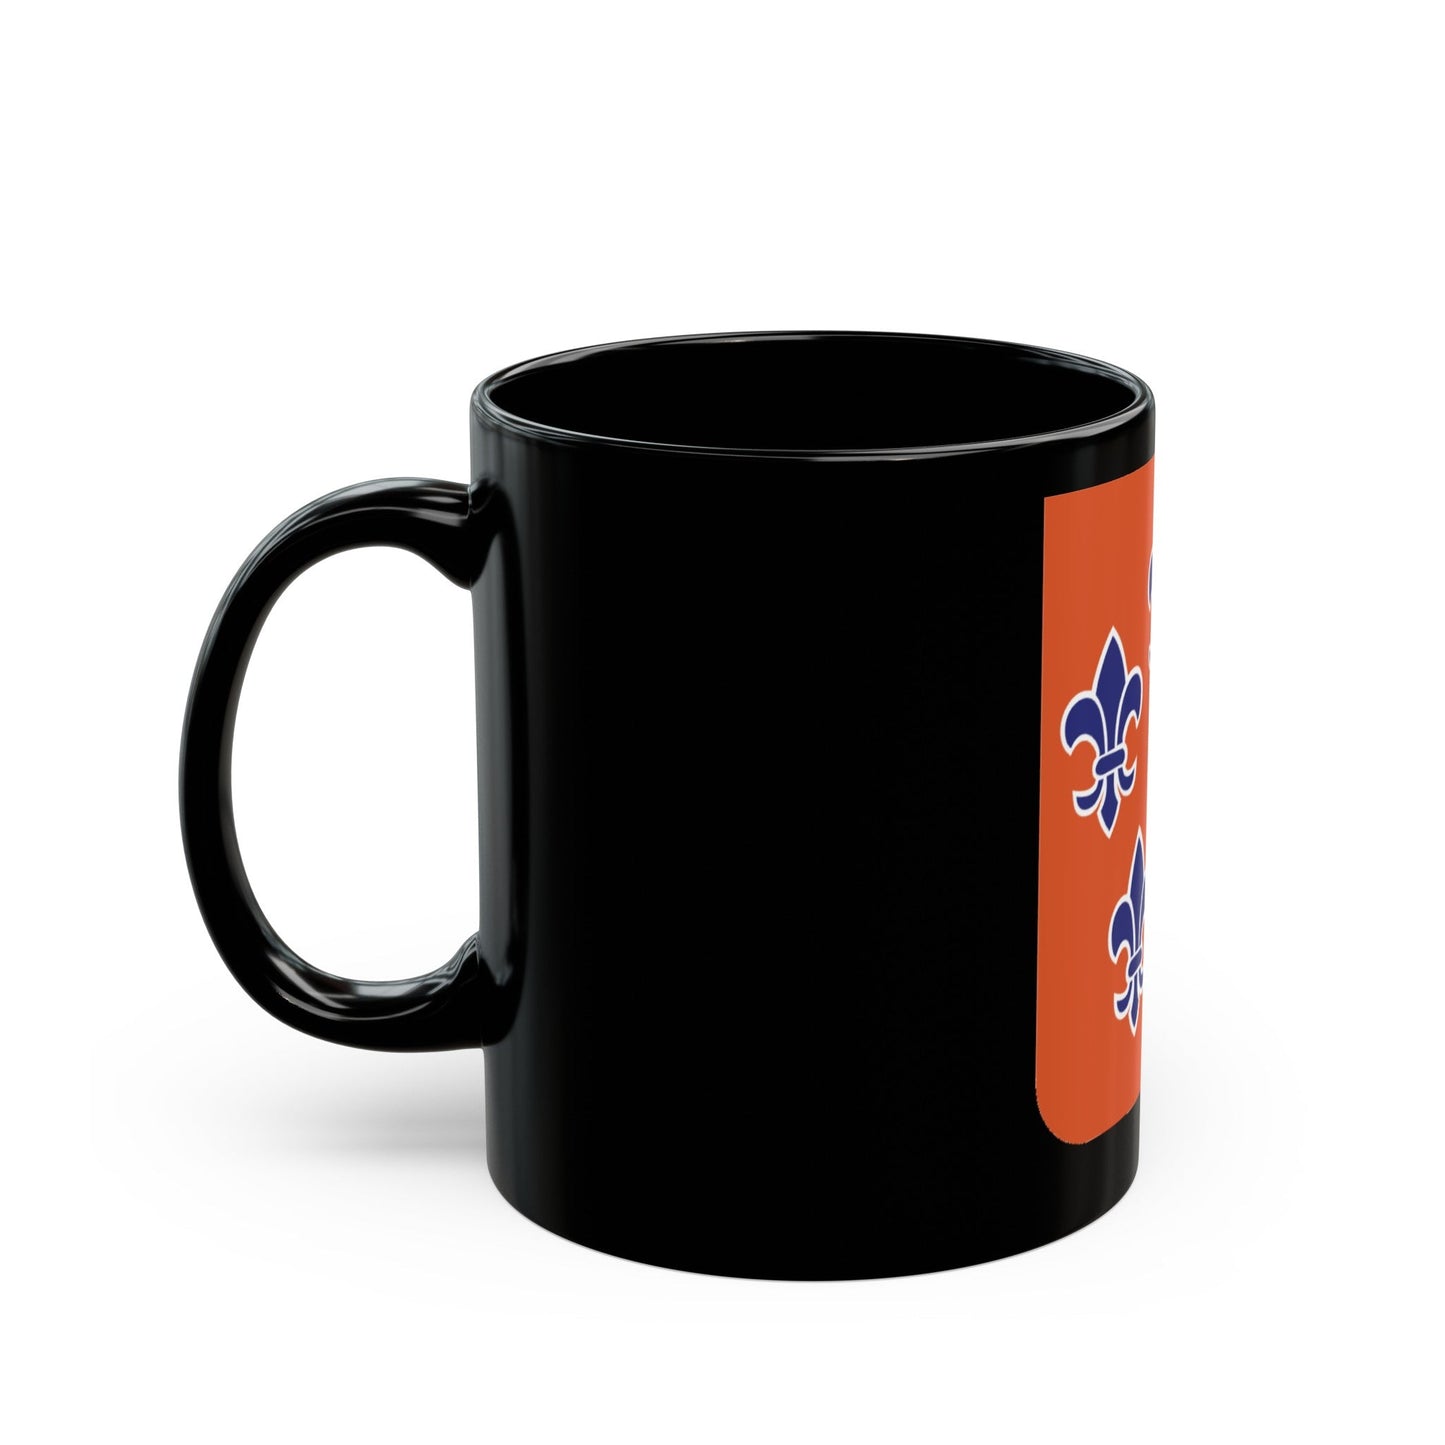 5 Signal Battalion 2 (U.S. Army) Black Coffee Mug